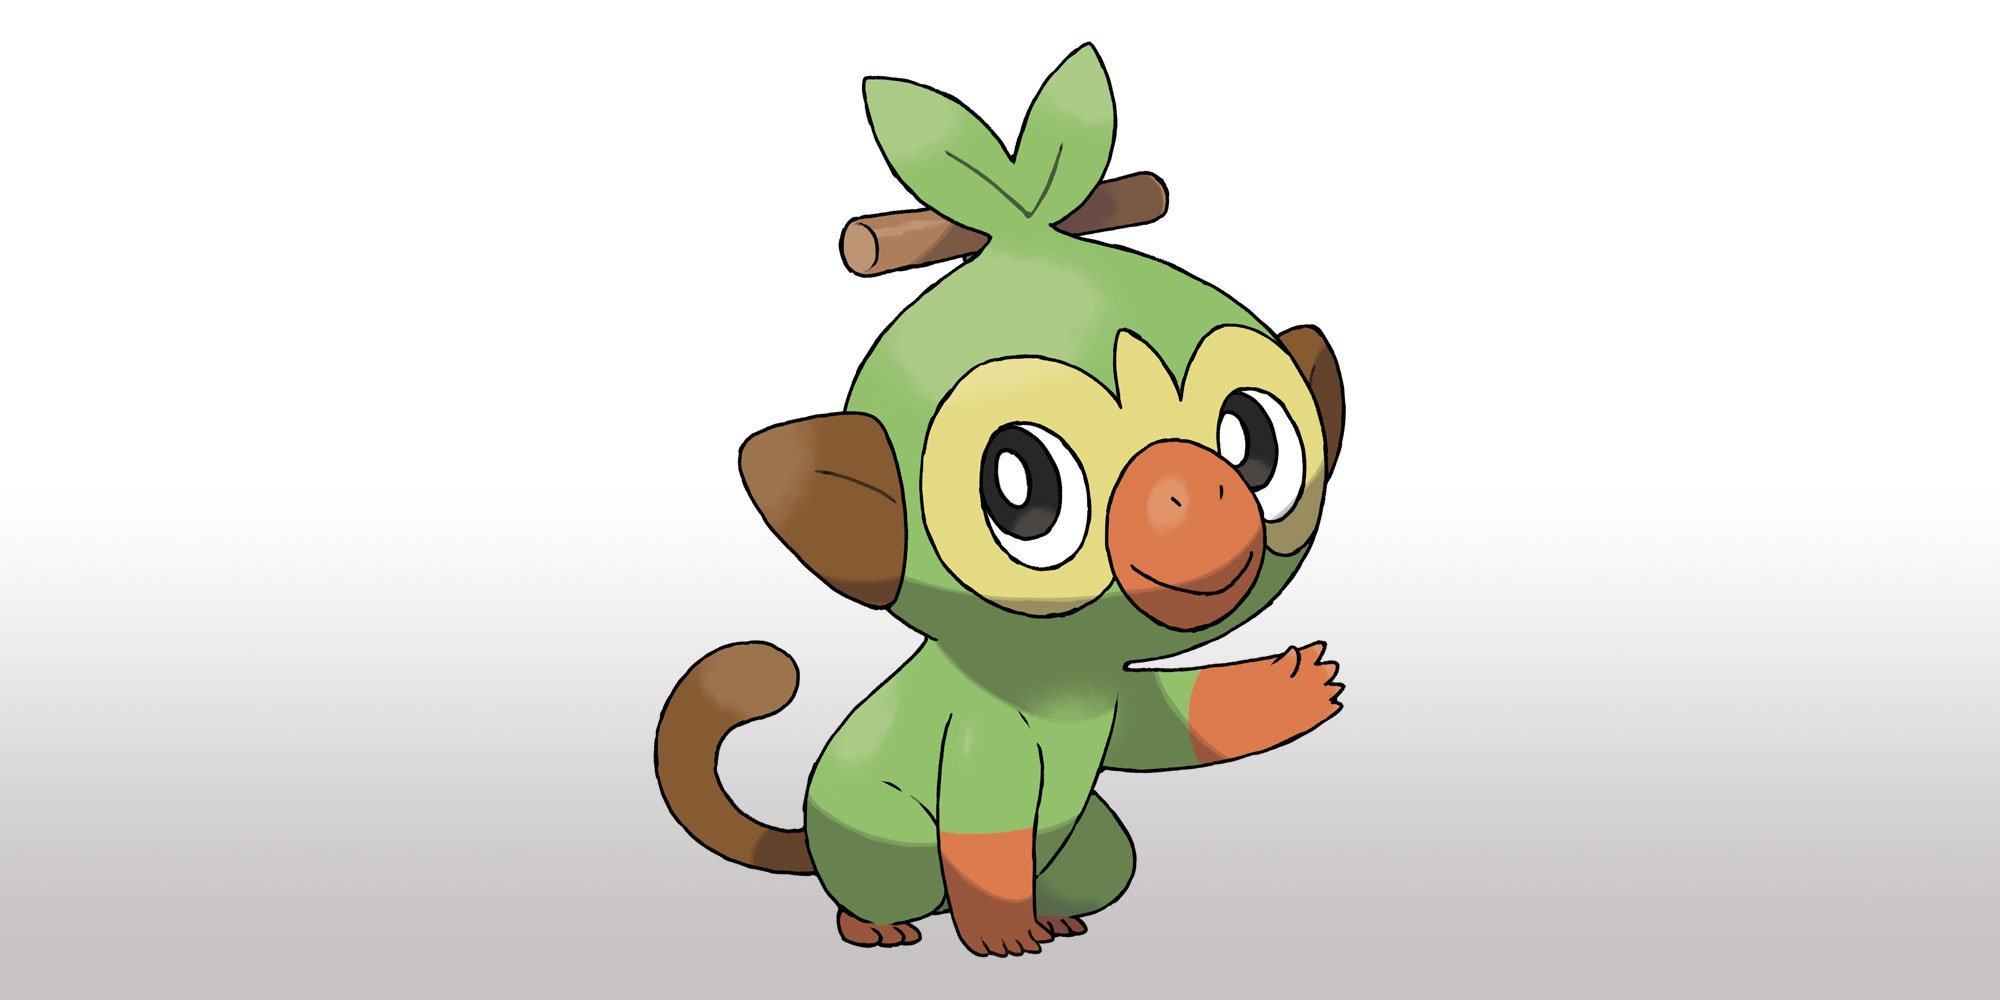 Nintendo Portugal on X: Em #PokemonSwordShield, o Grookey é um Pokémon  chimpanzé do tipo planta e tem tanto de travesso como de curioso! 🍃  #PokemonDirect  / X